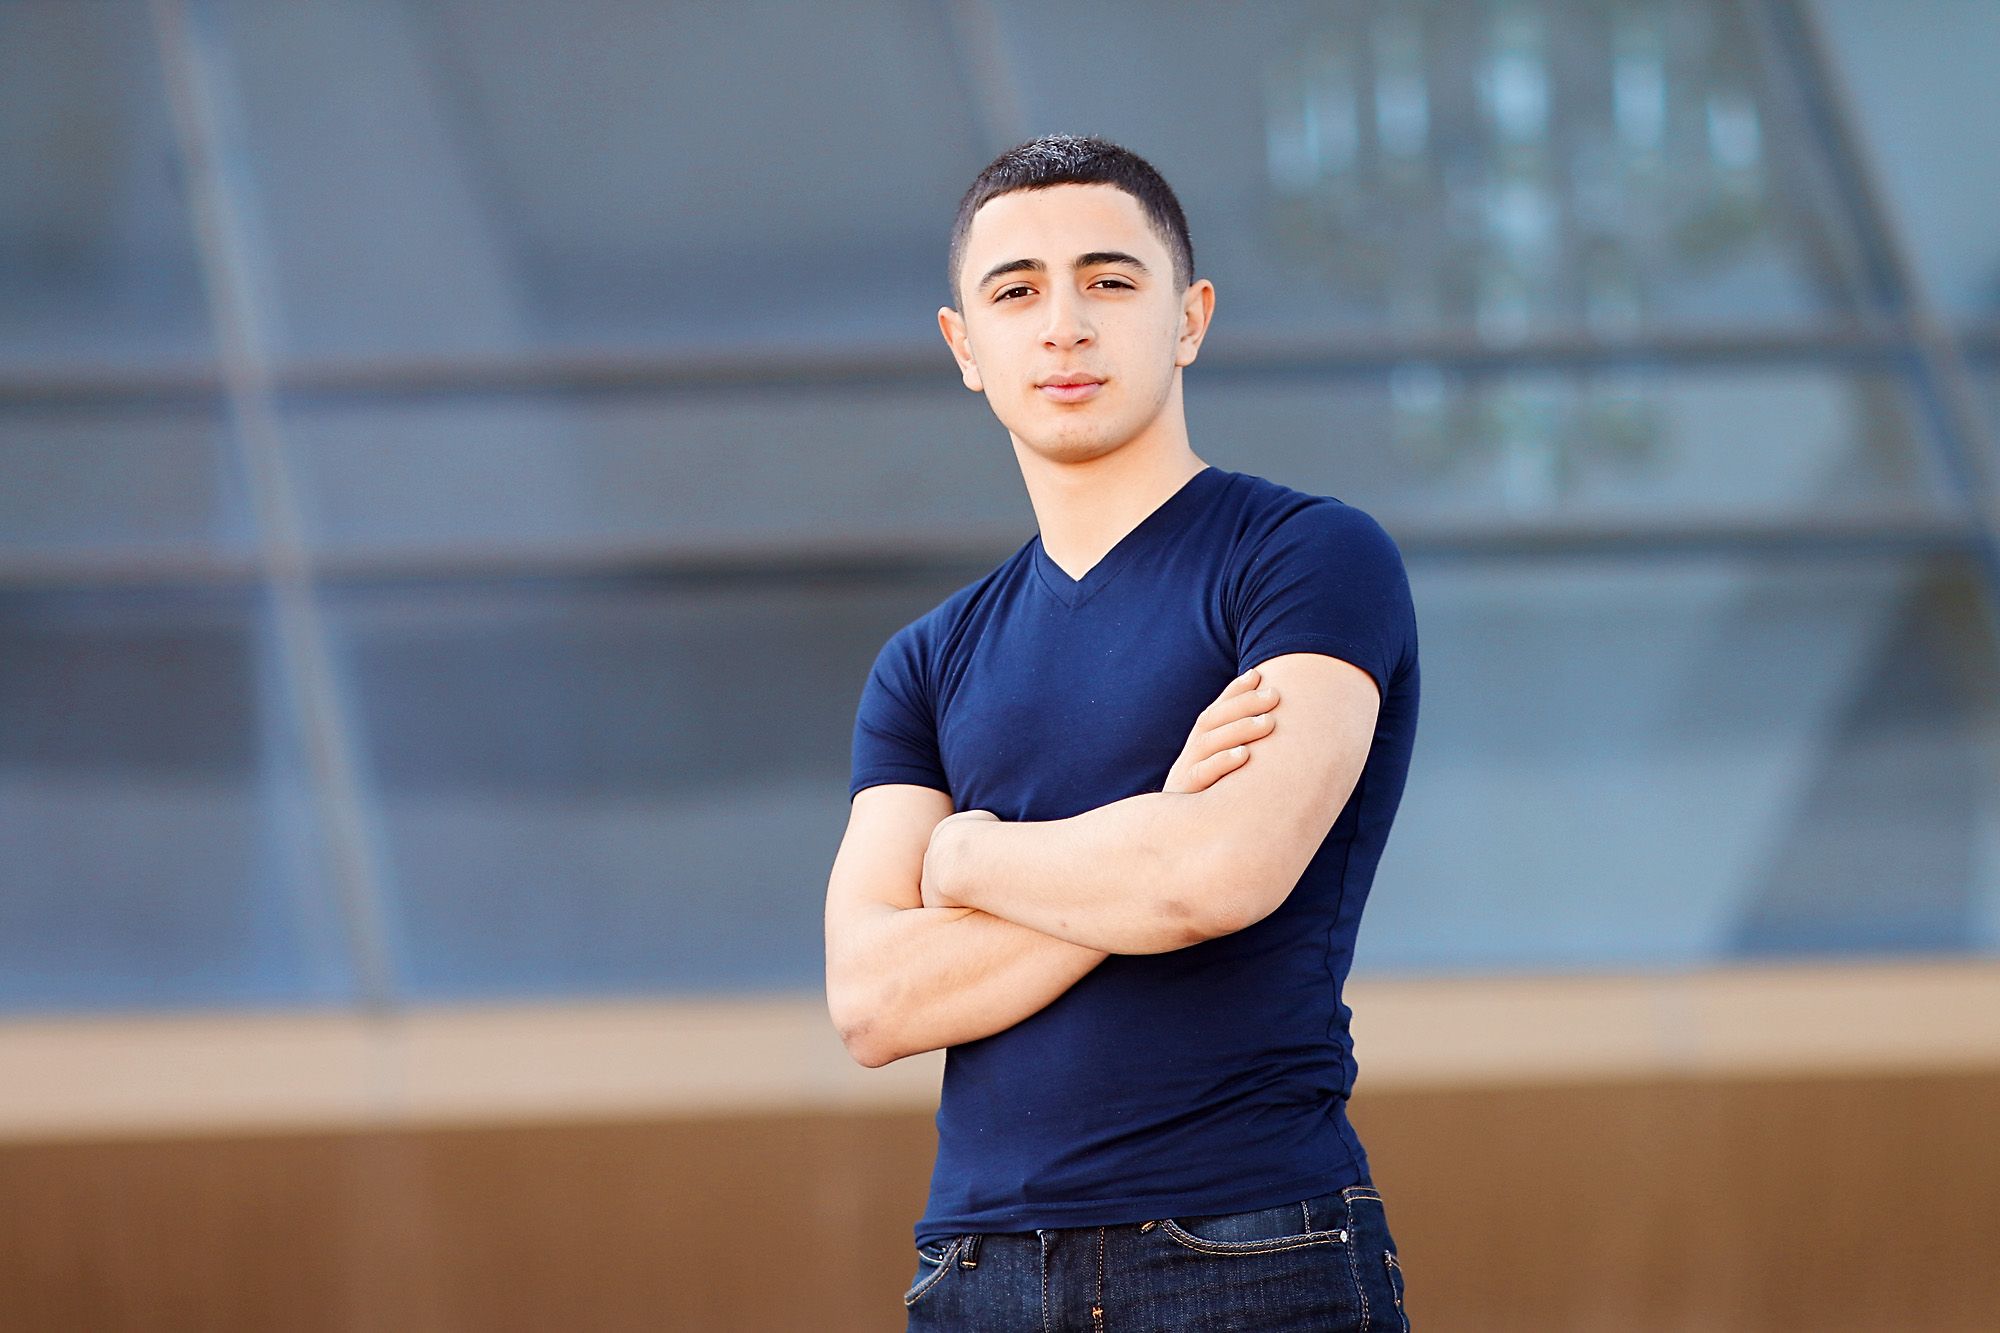 Էդգար Ավետիսյան, 16 տարեկան, ապագա ռադիոֆիզիկոս 